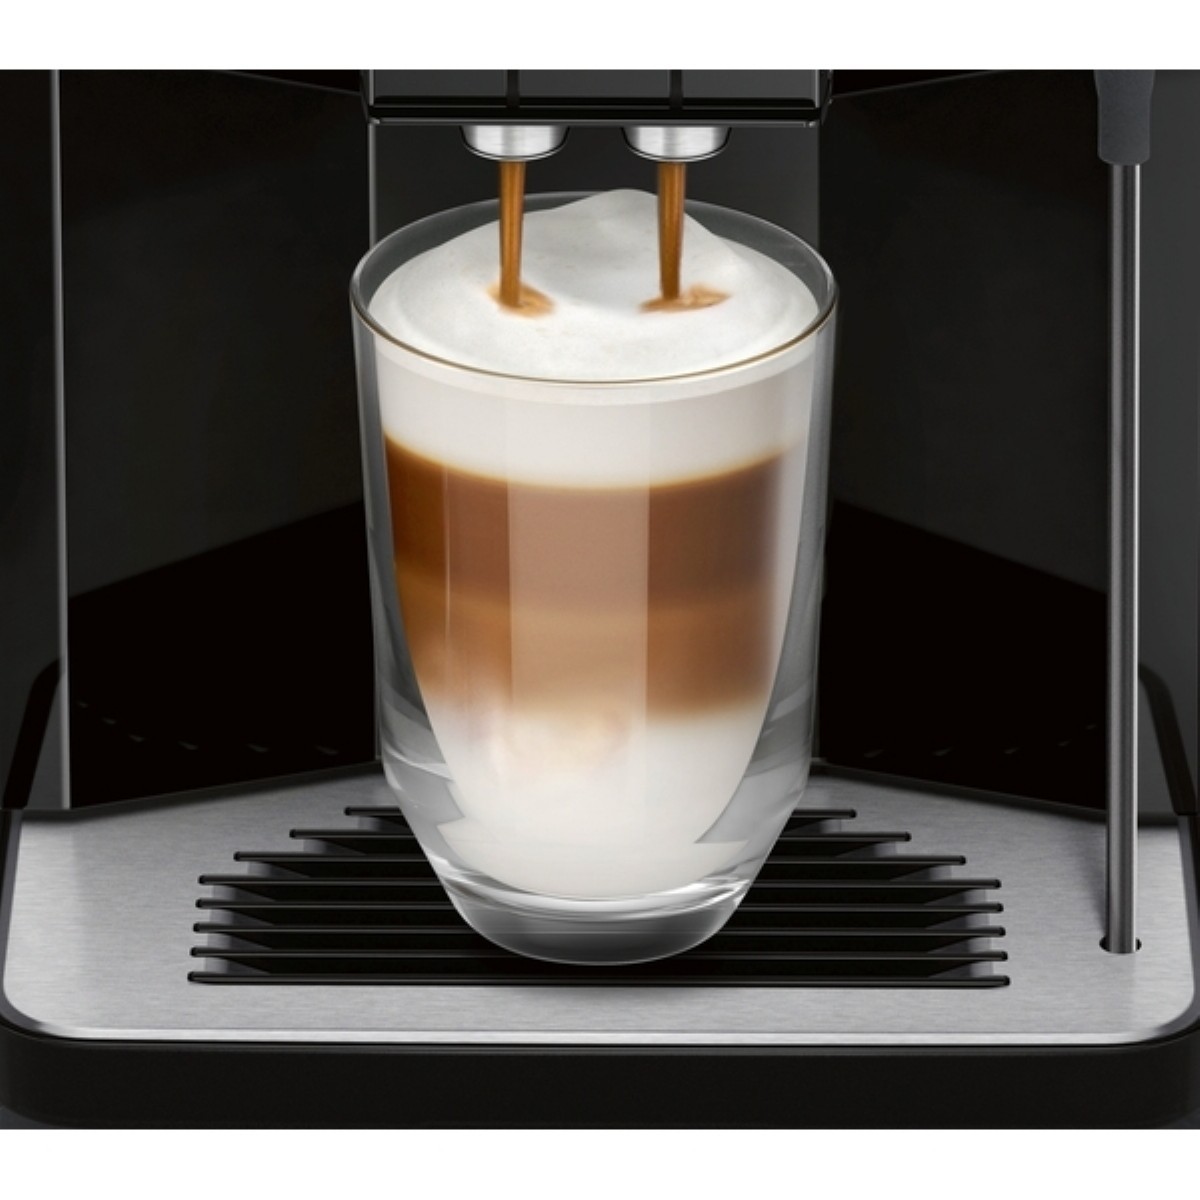 Espresso & Cappuccino Makinesi | Siemens TP501R09 EQ.5 Tam Otomatik Espresso Makinesi | TP501R09 | Siemens TP501R09 EQ.5 Tam Otomatik Espresso Makinesi | 